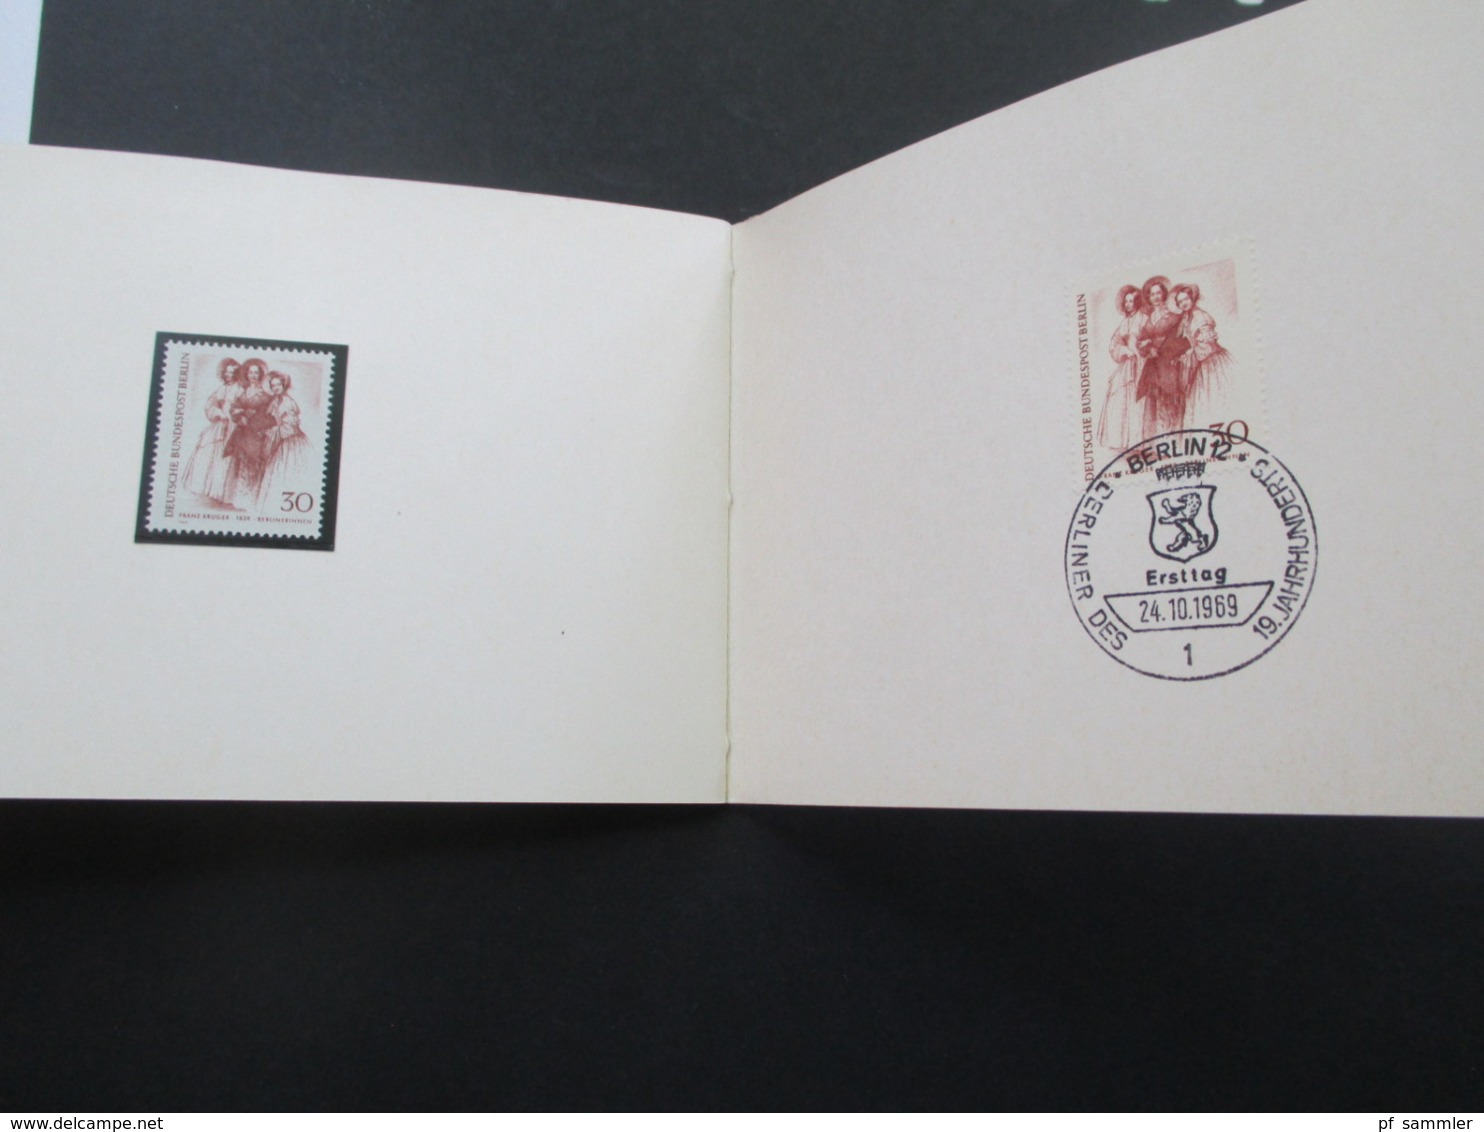 Berlin 1967 und 69 Ministerbücher ?! Sonderpostwertzeichen überreicht von der Landespostdirektion Berlin